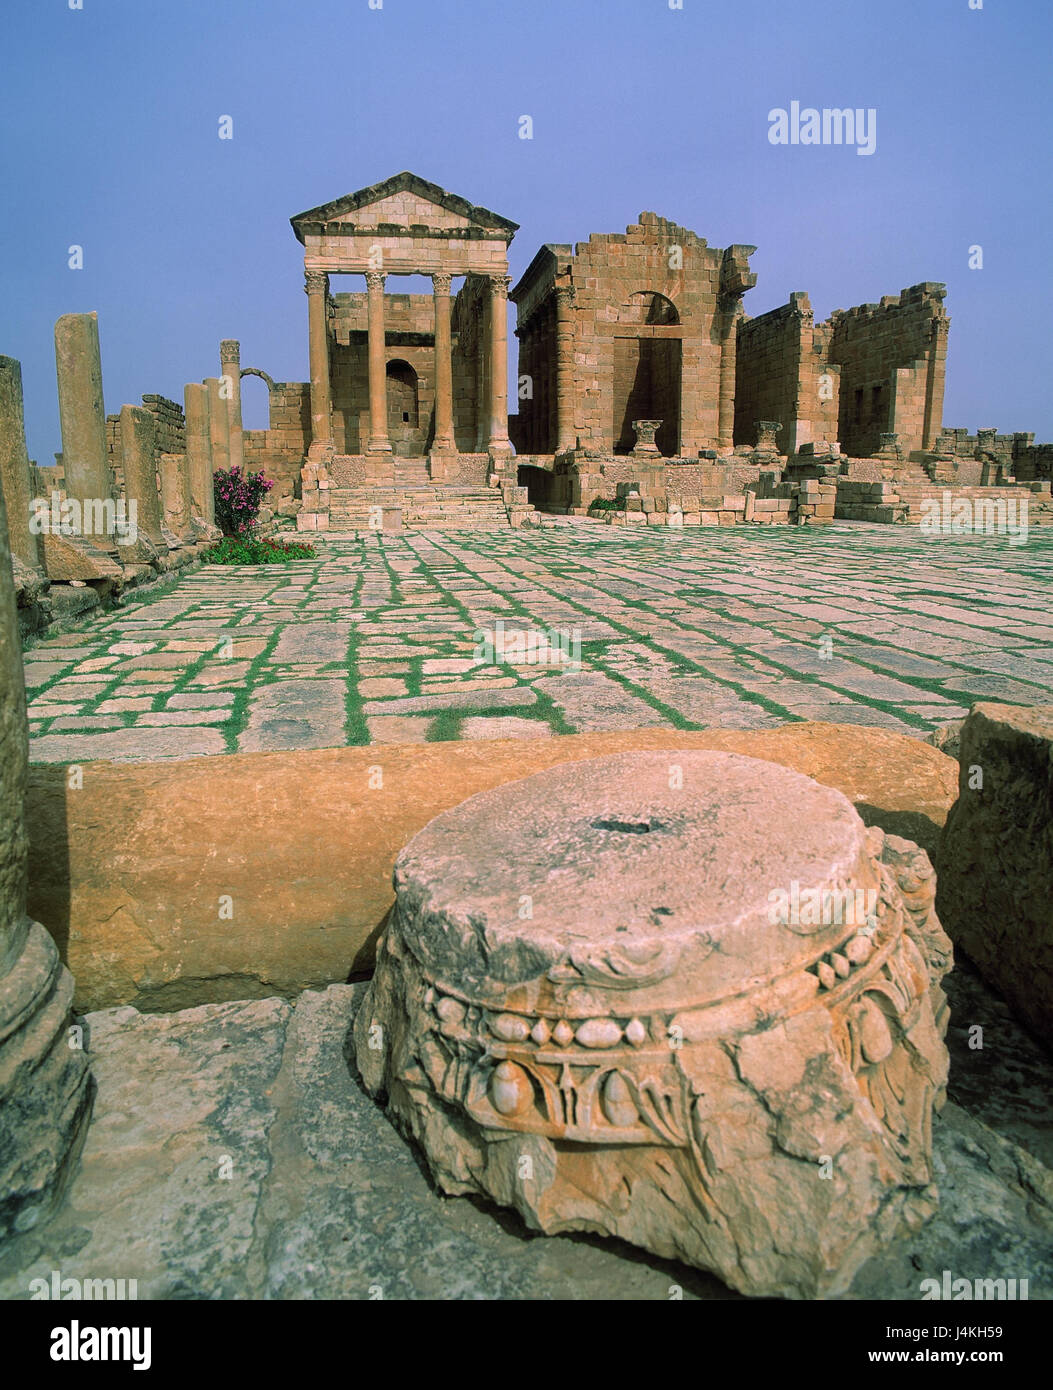 La Tunisia, Sbeitla, Juptier tempio, Tempio di Juno al di fuori, rovine, i resti di un tempio romano,, scavi, arte, cultura Foto Stock